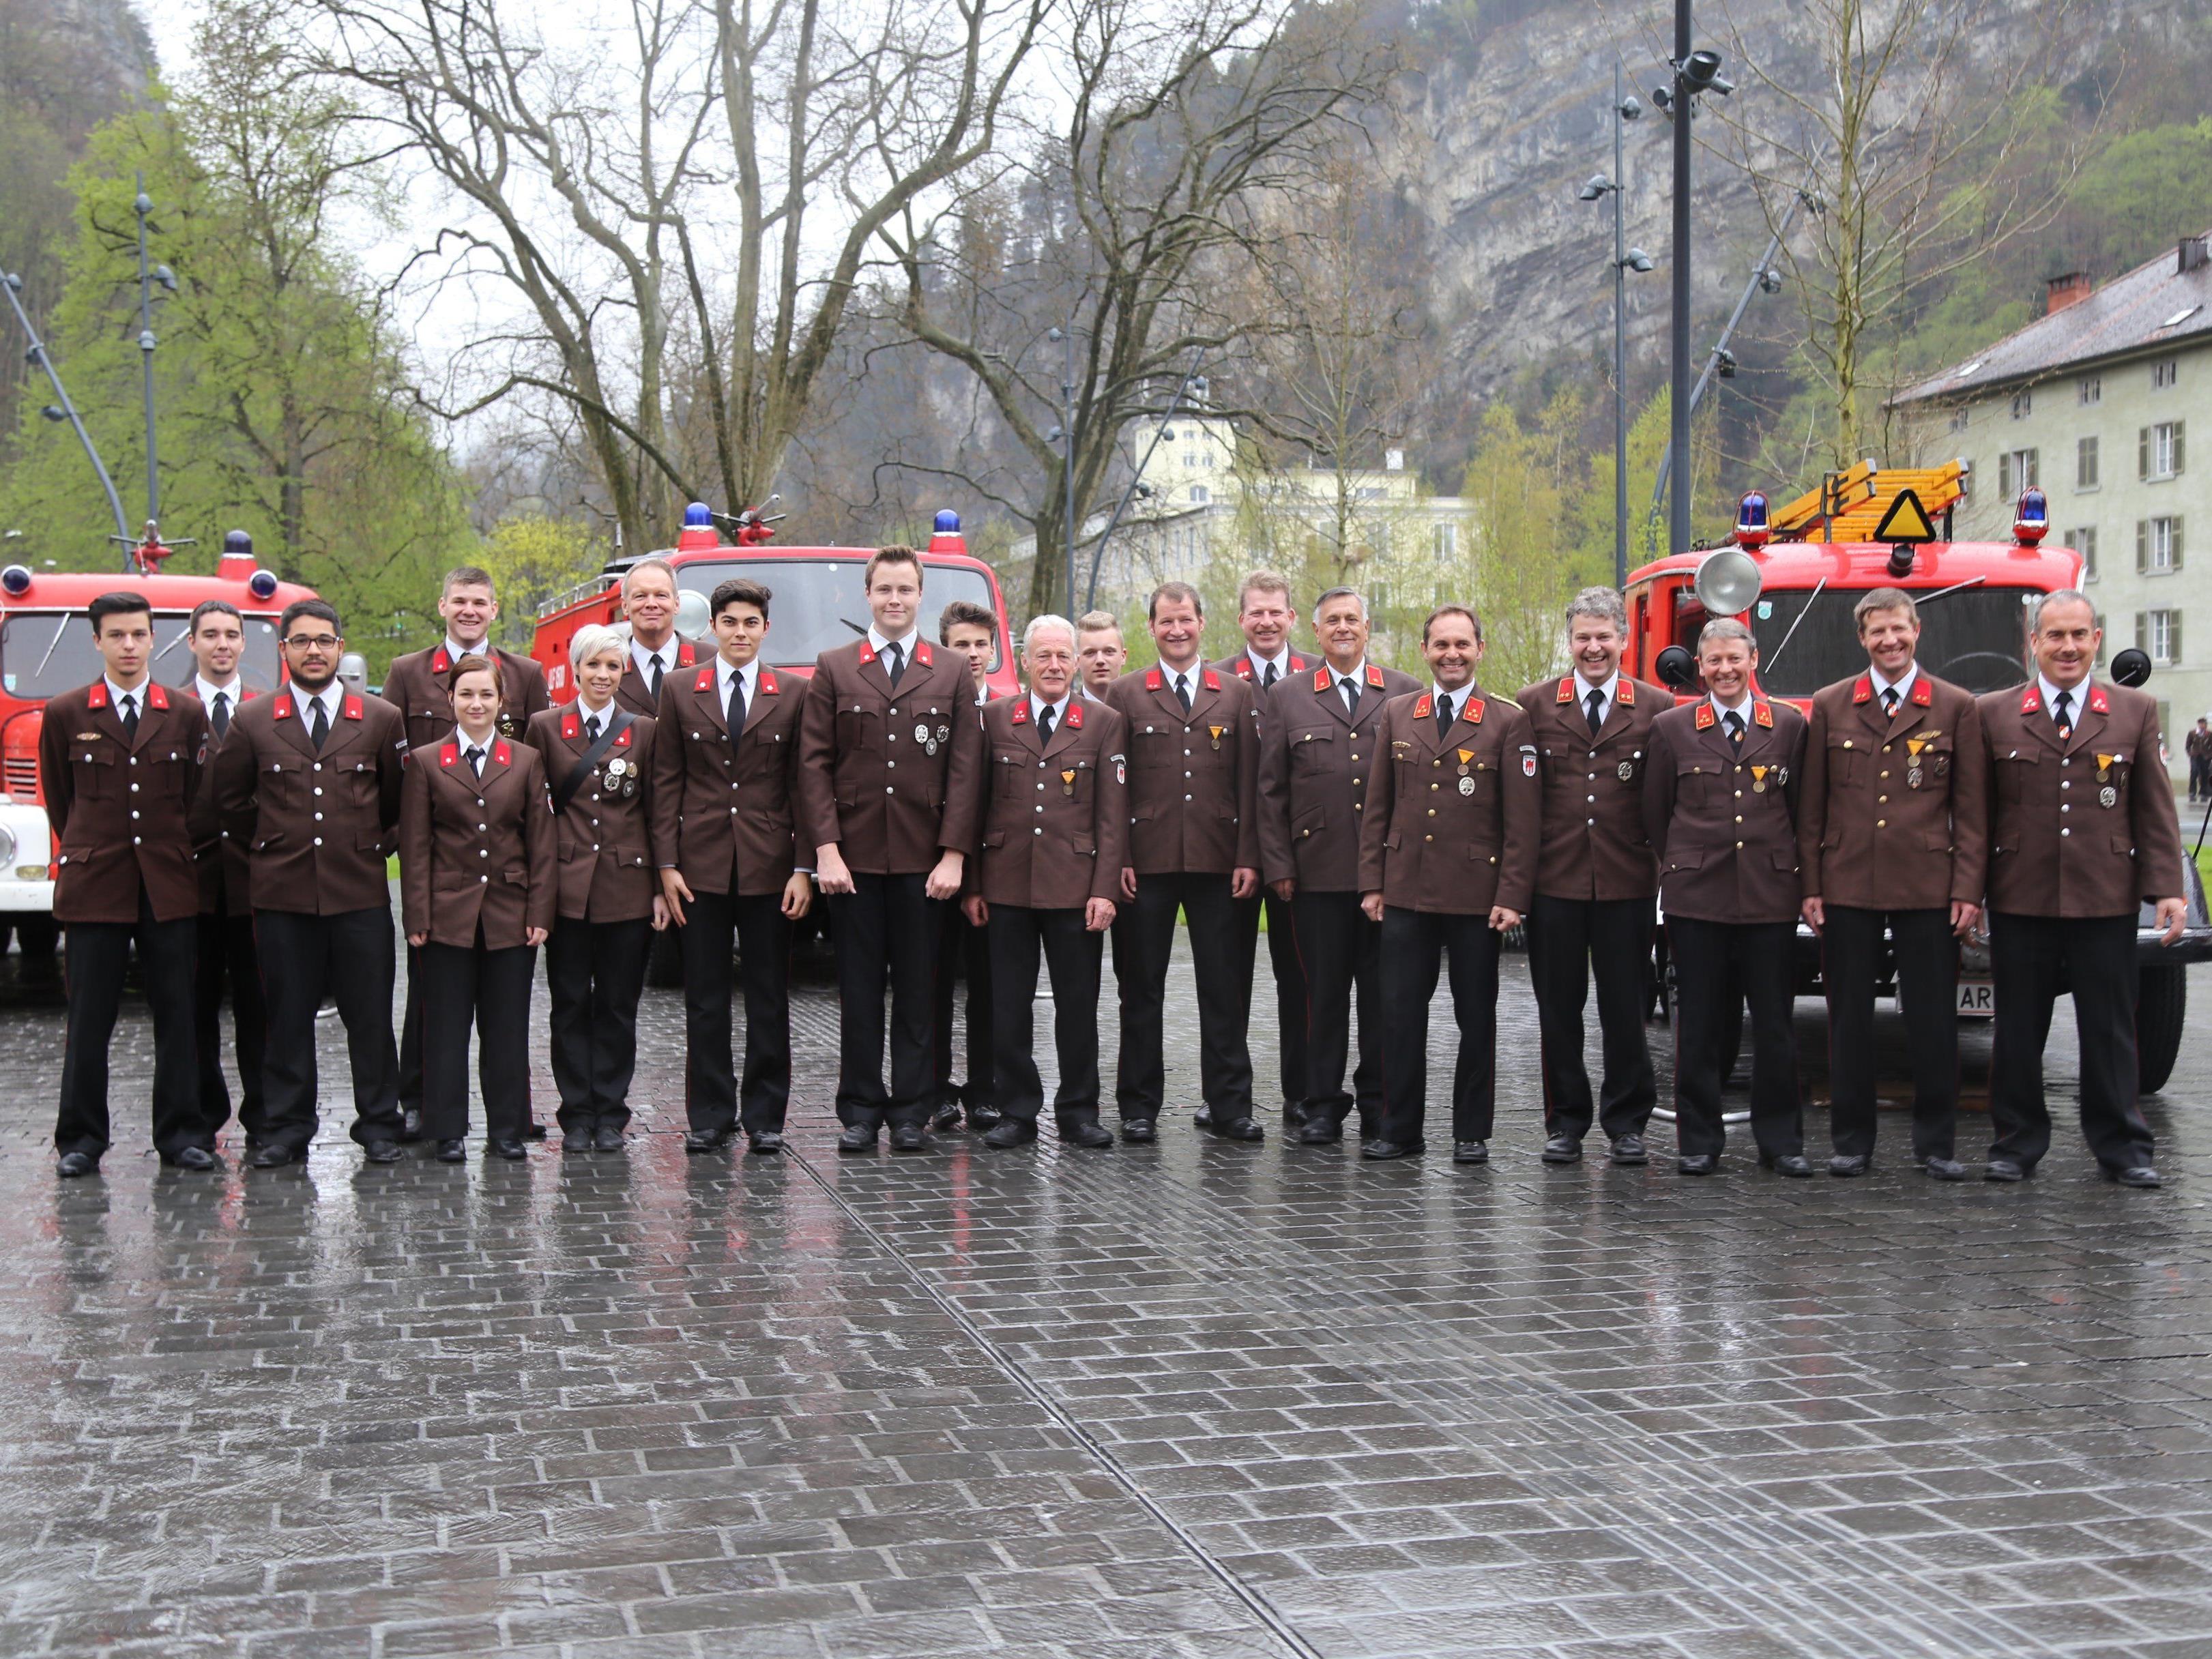 140 Jahre Feuerhwehr in Vorarlberg sowie 30 Jahre Feuerwehrschule wurde zelebriert.